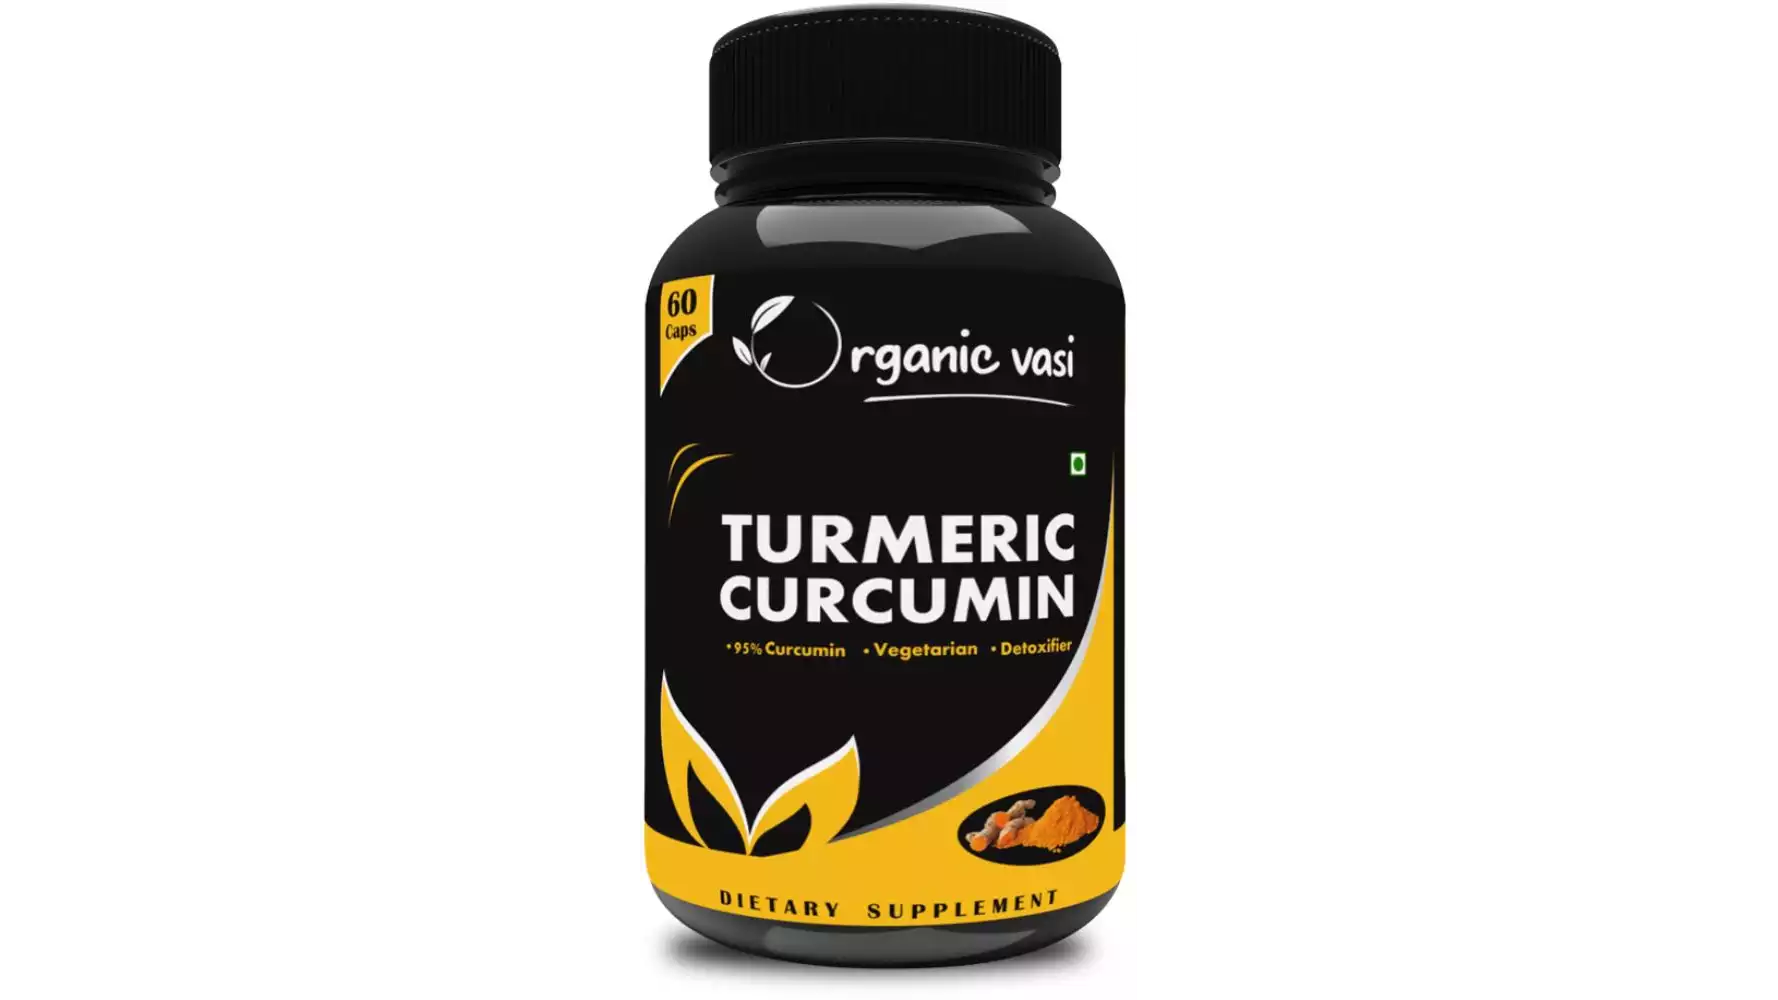 Organic Vasi Turmeric Curcumin Supplement (60caps)